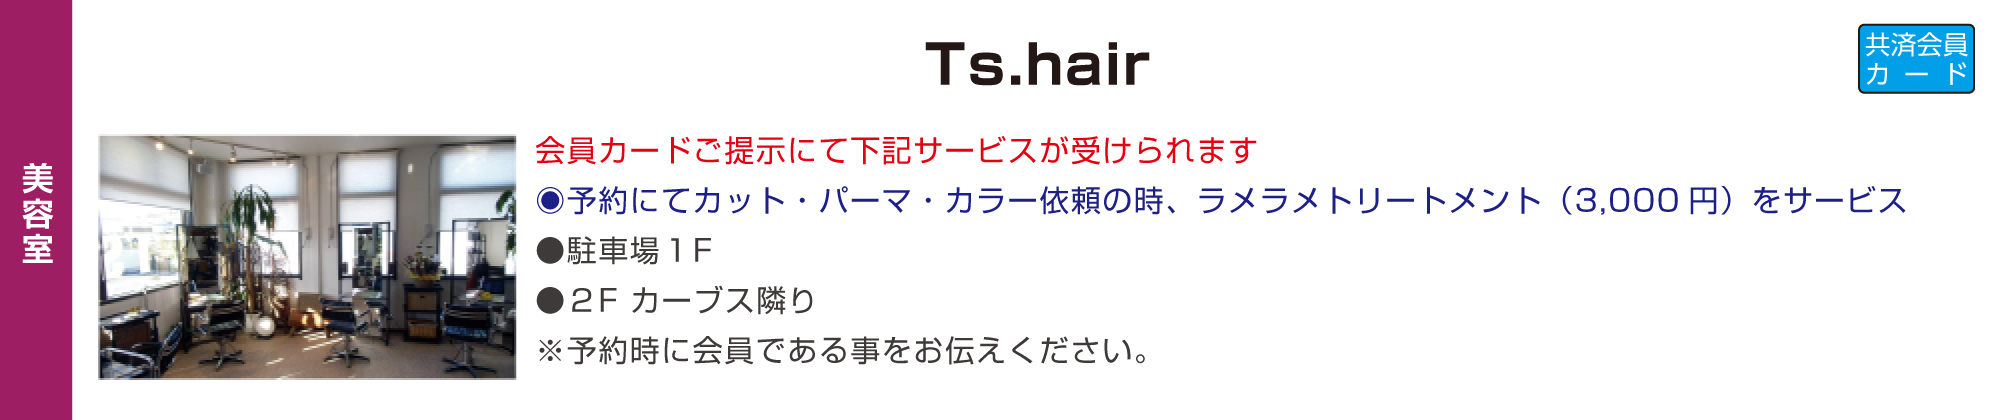 TS.hair